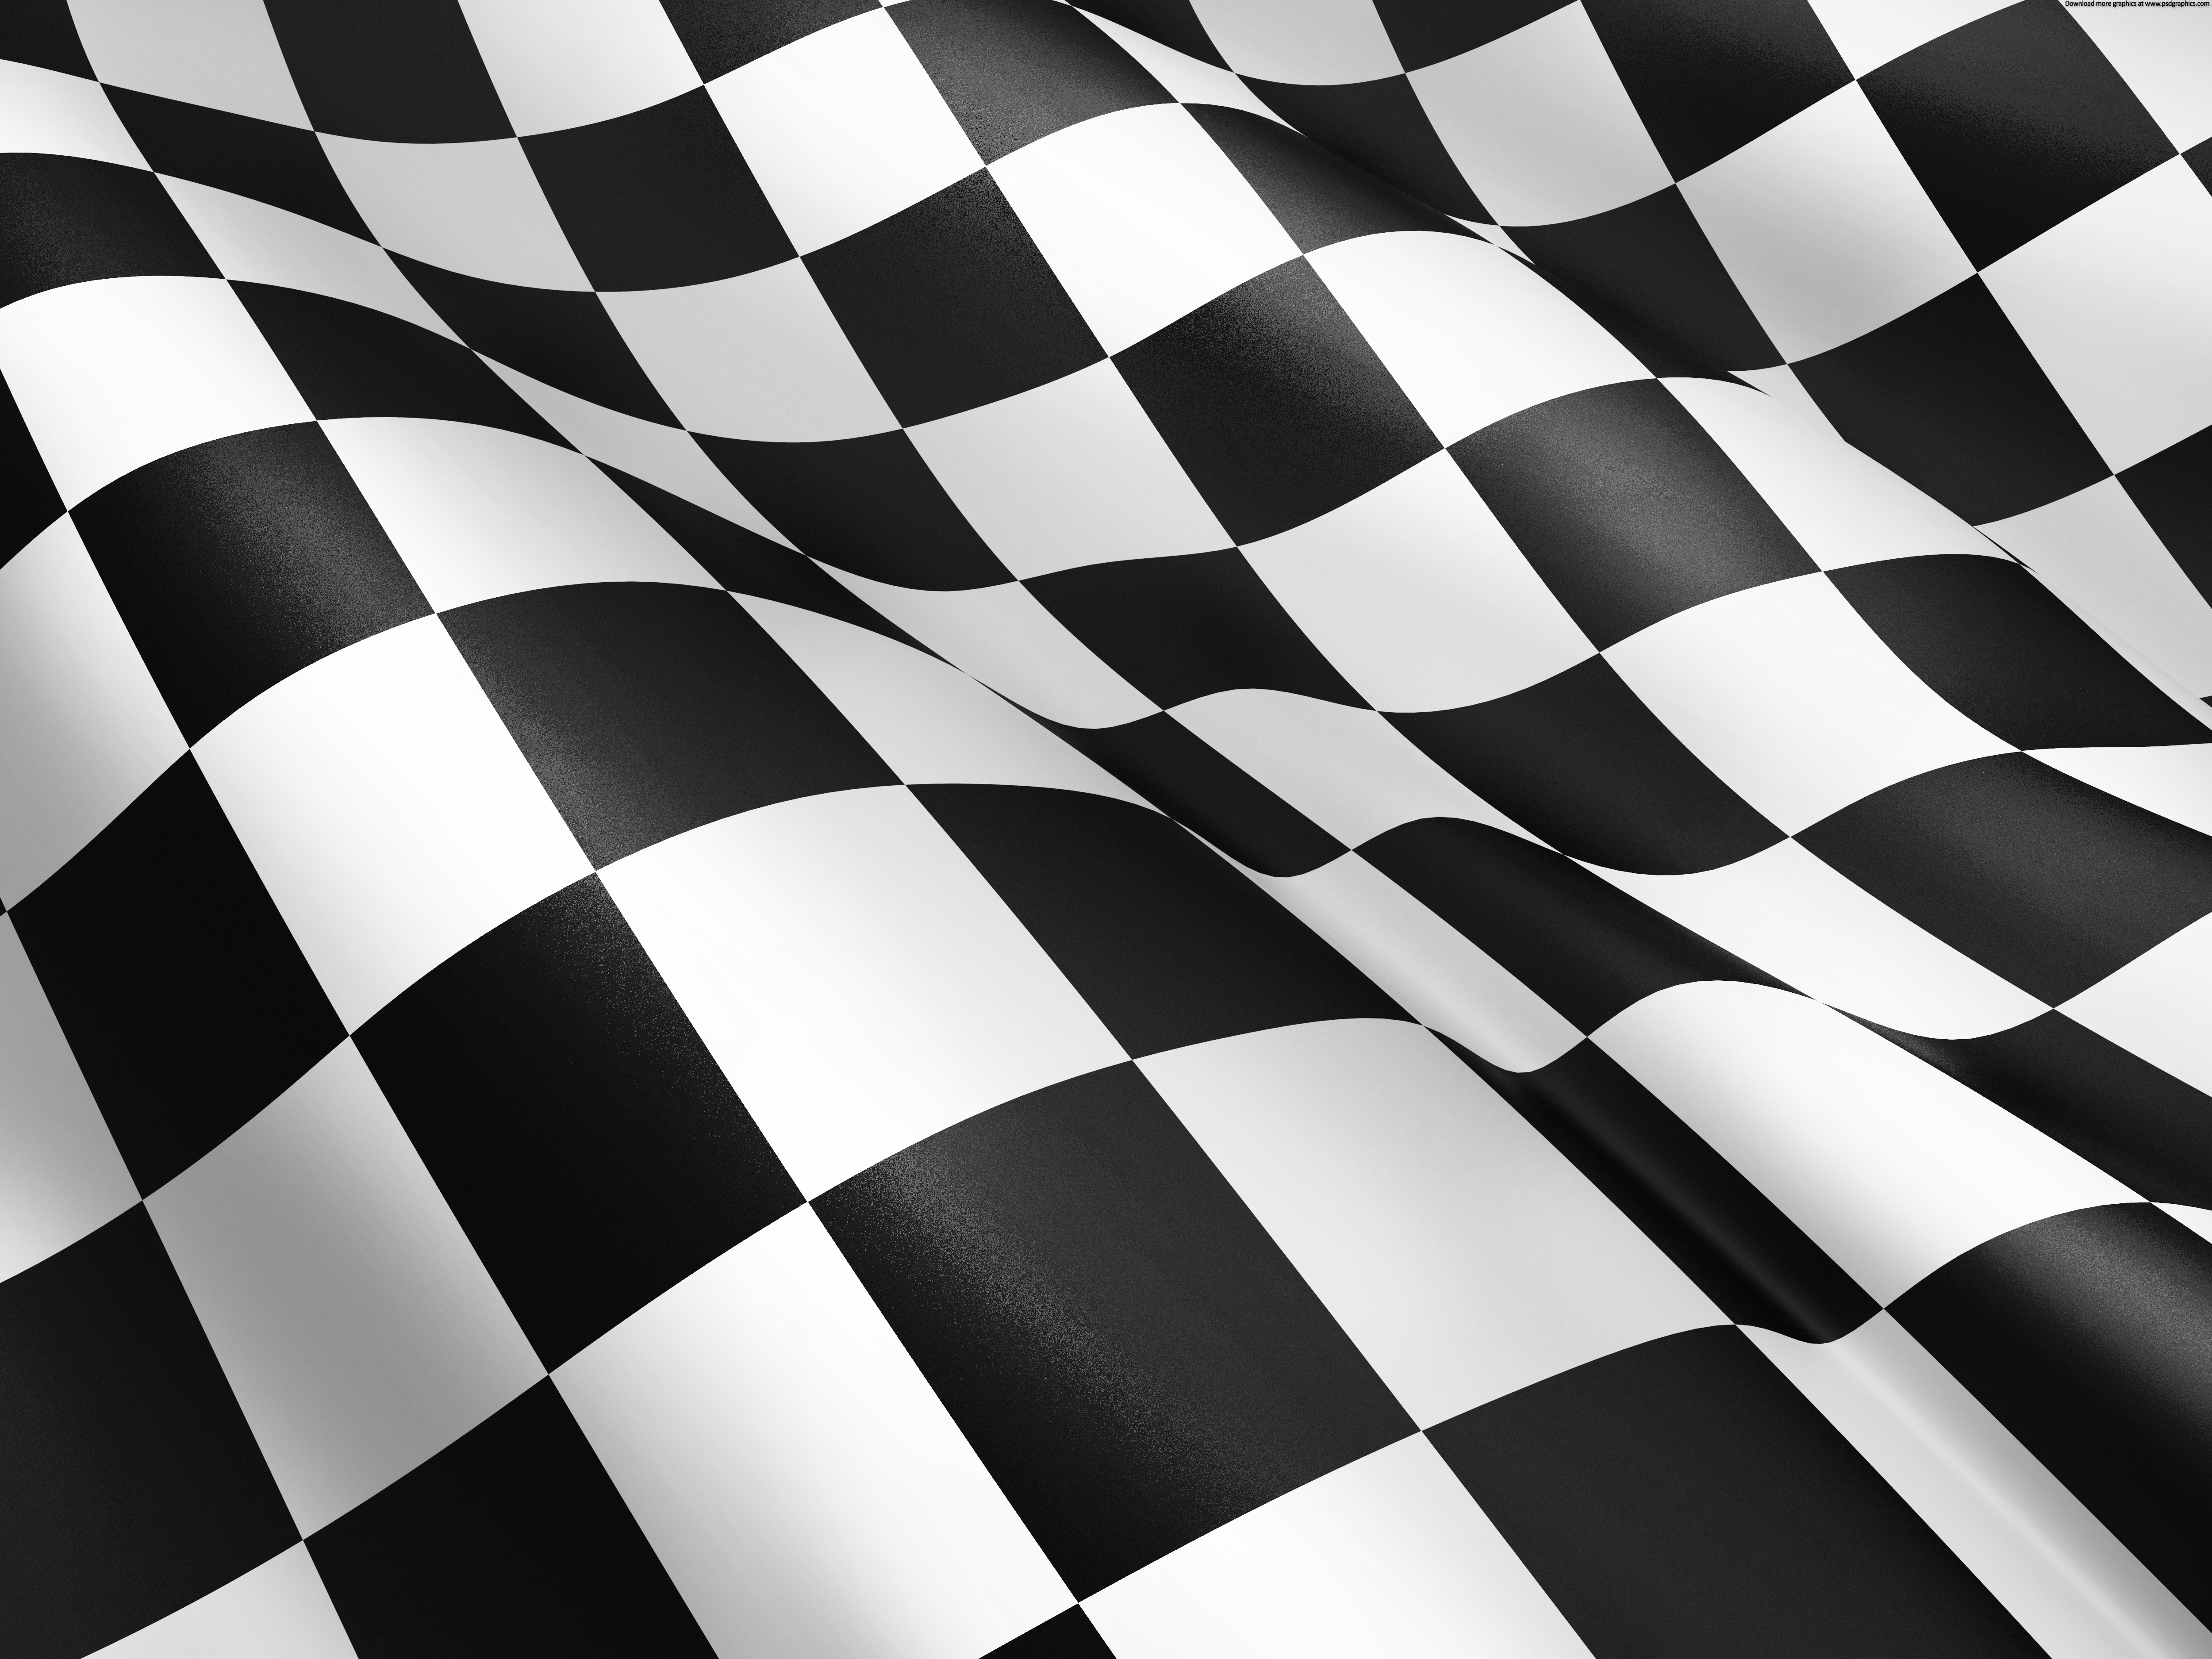 [48+] Racing Checkered Flag Wallpaper Borders on WallpaperSafari